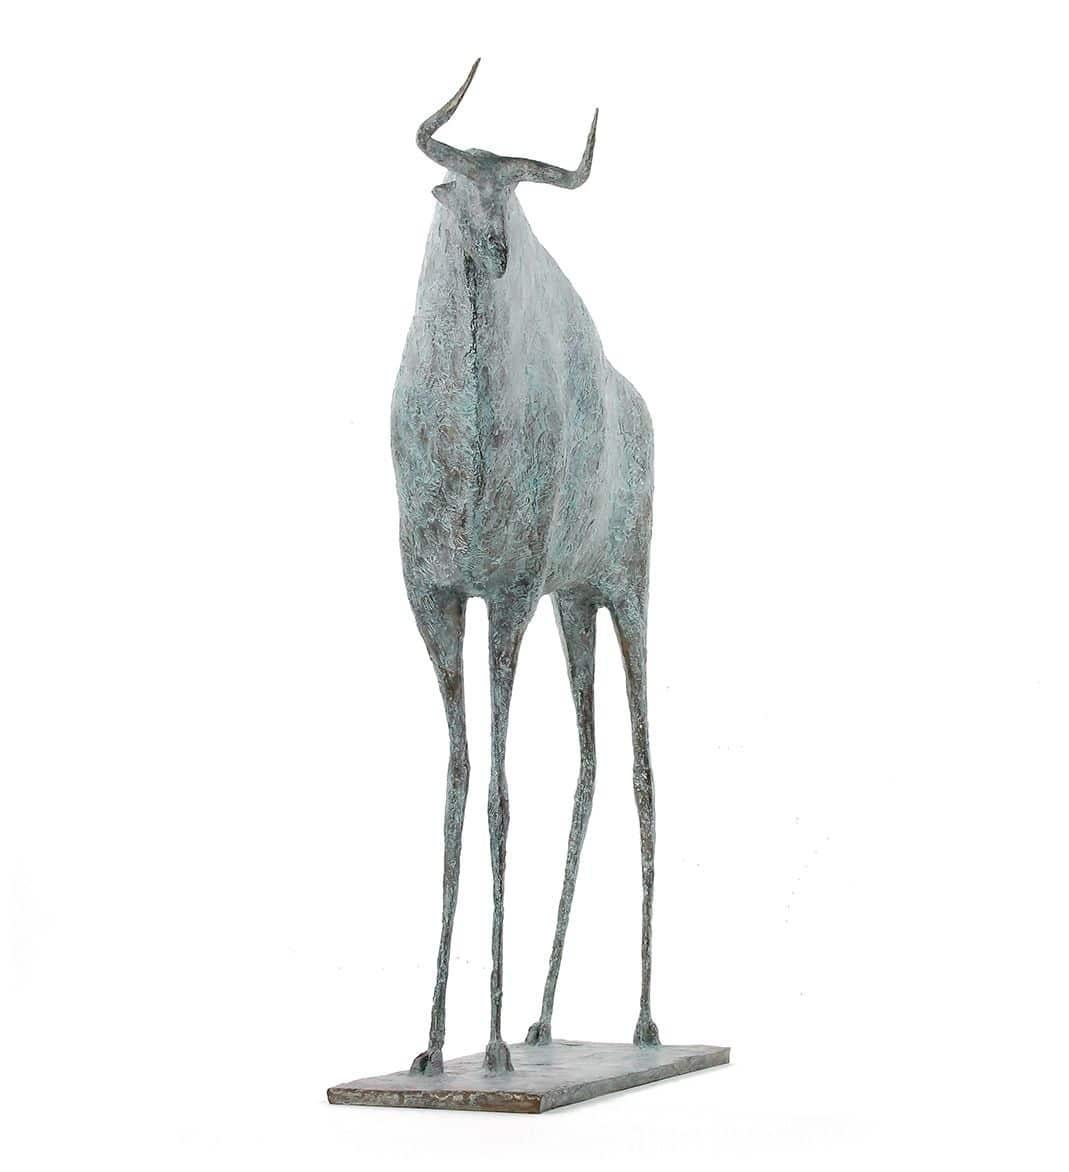 Bull VIII est une sculpture en bronze de l'artiste contemporain français Pierre Yermia, dont les dimensions sont de 73 × 58 × 17 cm (28,7 × 22,8 × 6,7 in). 
La sculpture est signée et numérotée, elle fait partie d'une édition limitée à 8 exemplaires